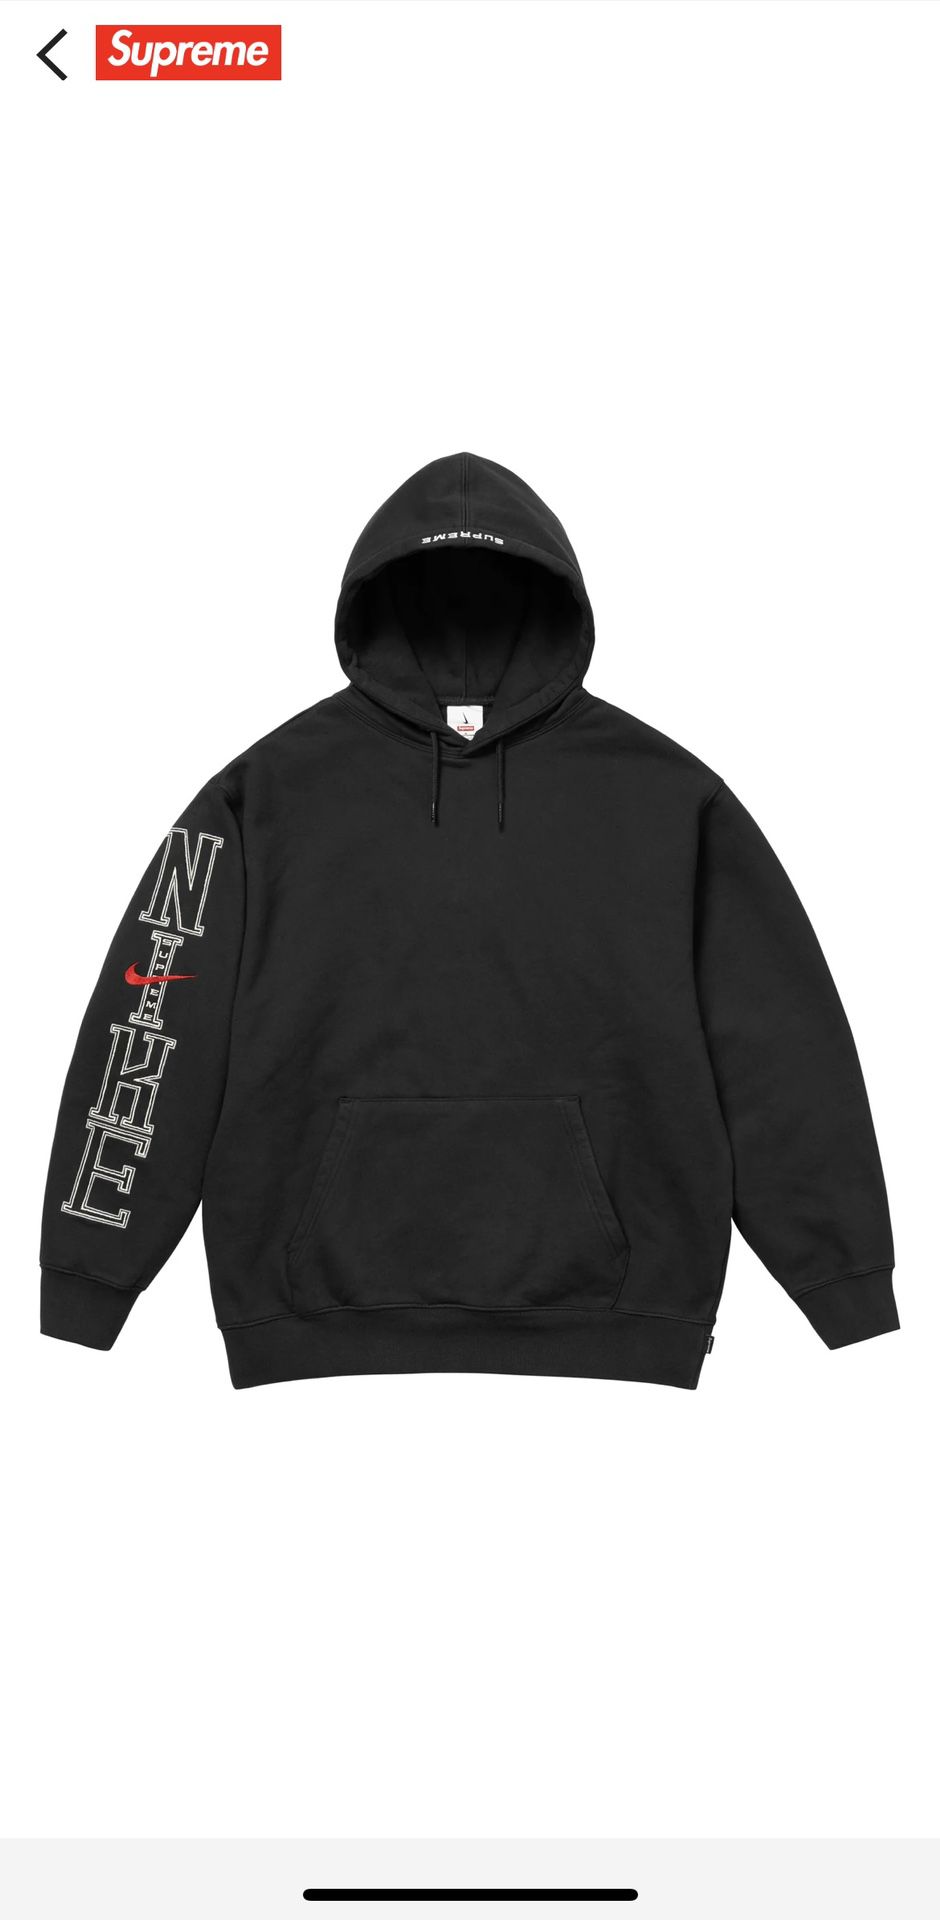 Supreme/Nike Hooded Sweatshirt 